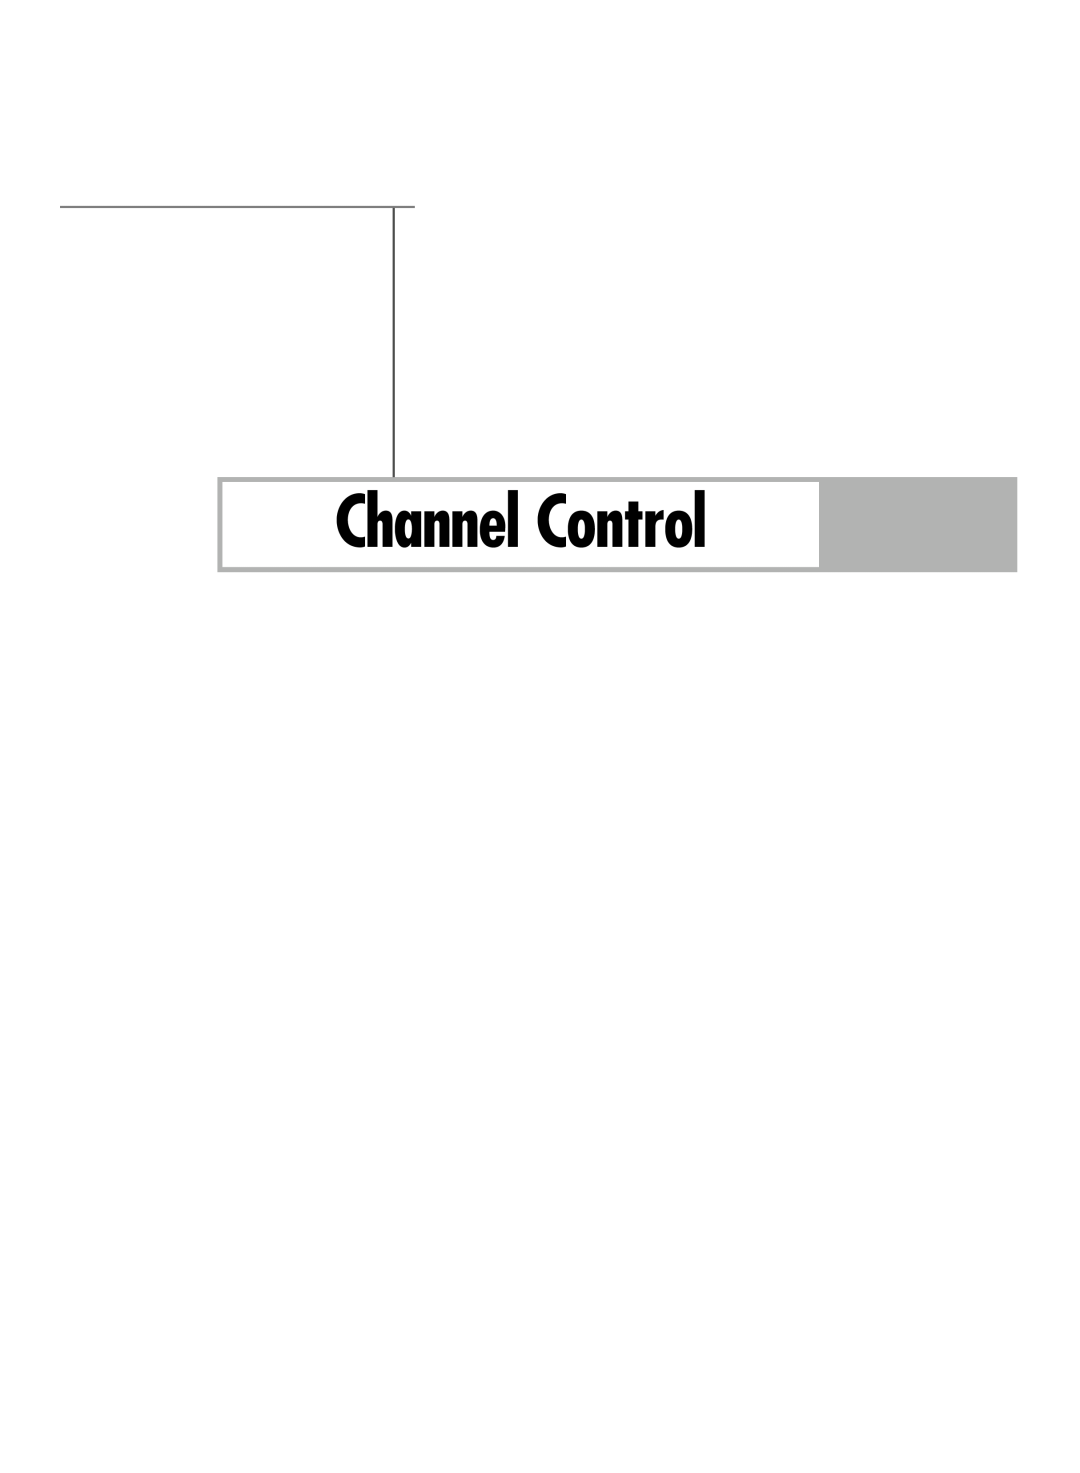 Samsung HL-R5688W manual Channel Control 